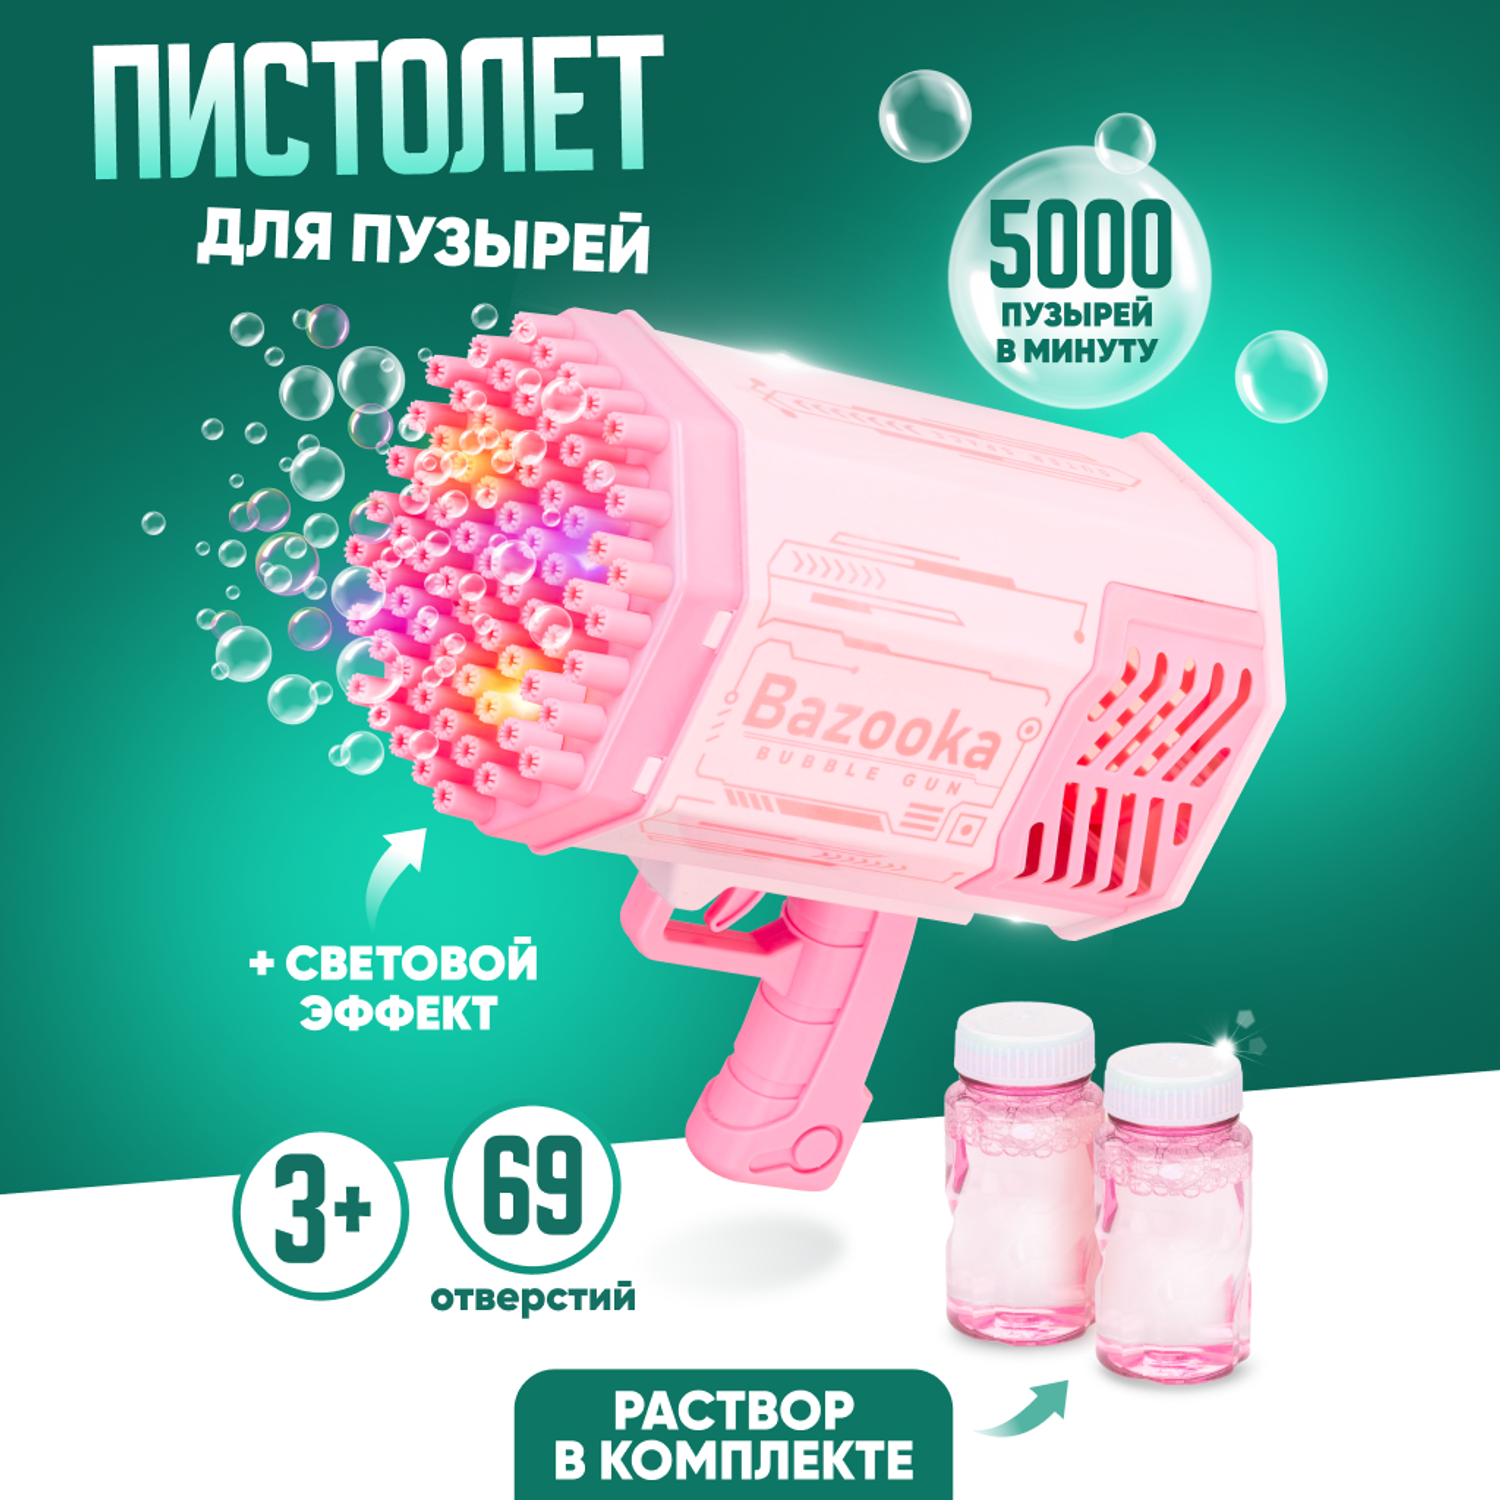 Генератор мыльных пузырей Solmax пистолет 5000 пузырей в минуту со световыми эффектами для детей розовый - фото 1